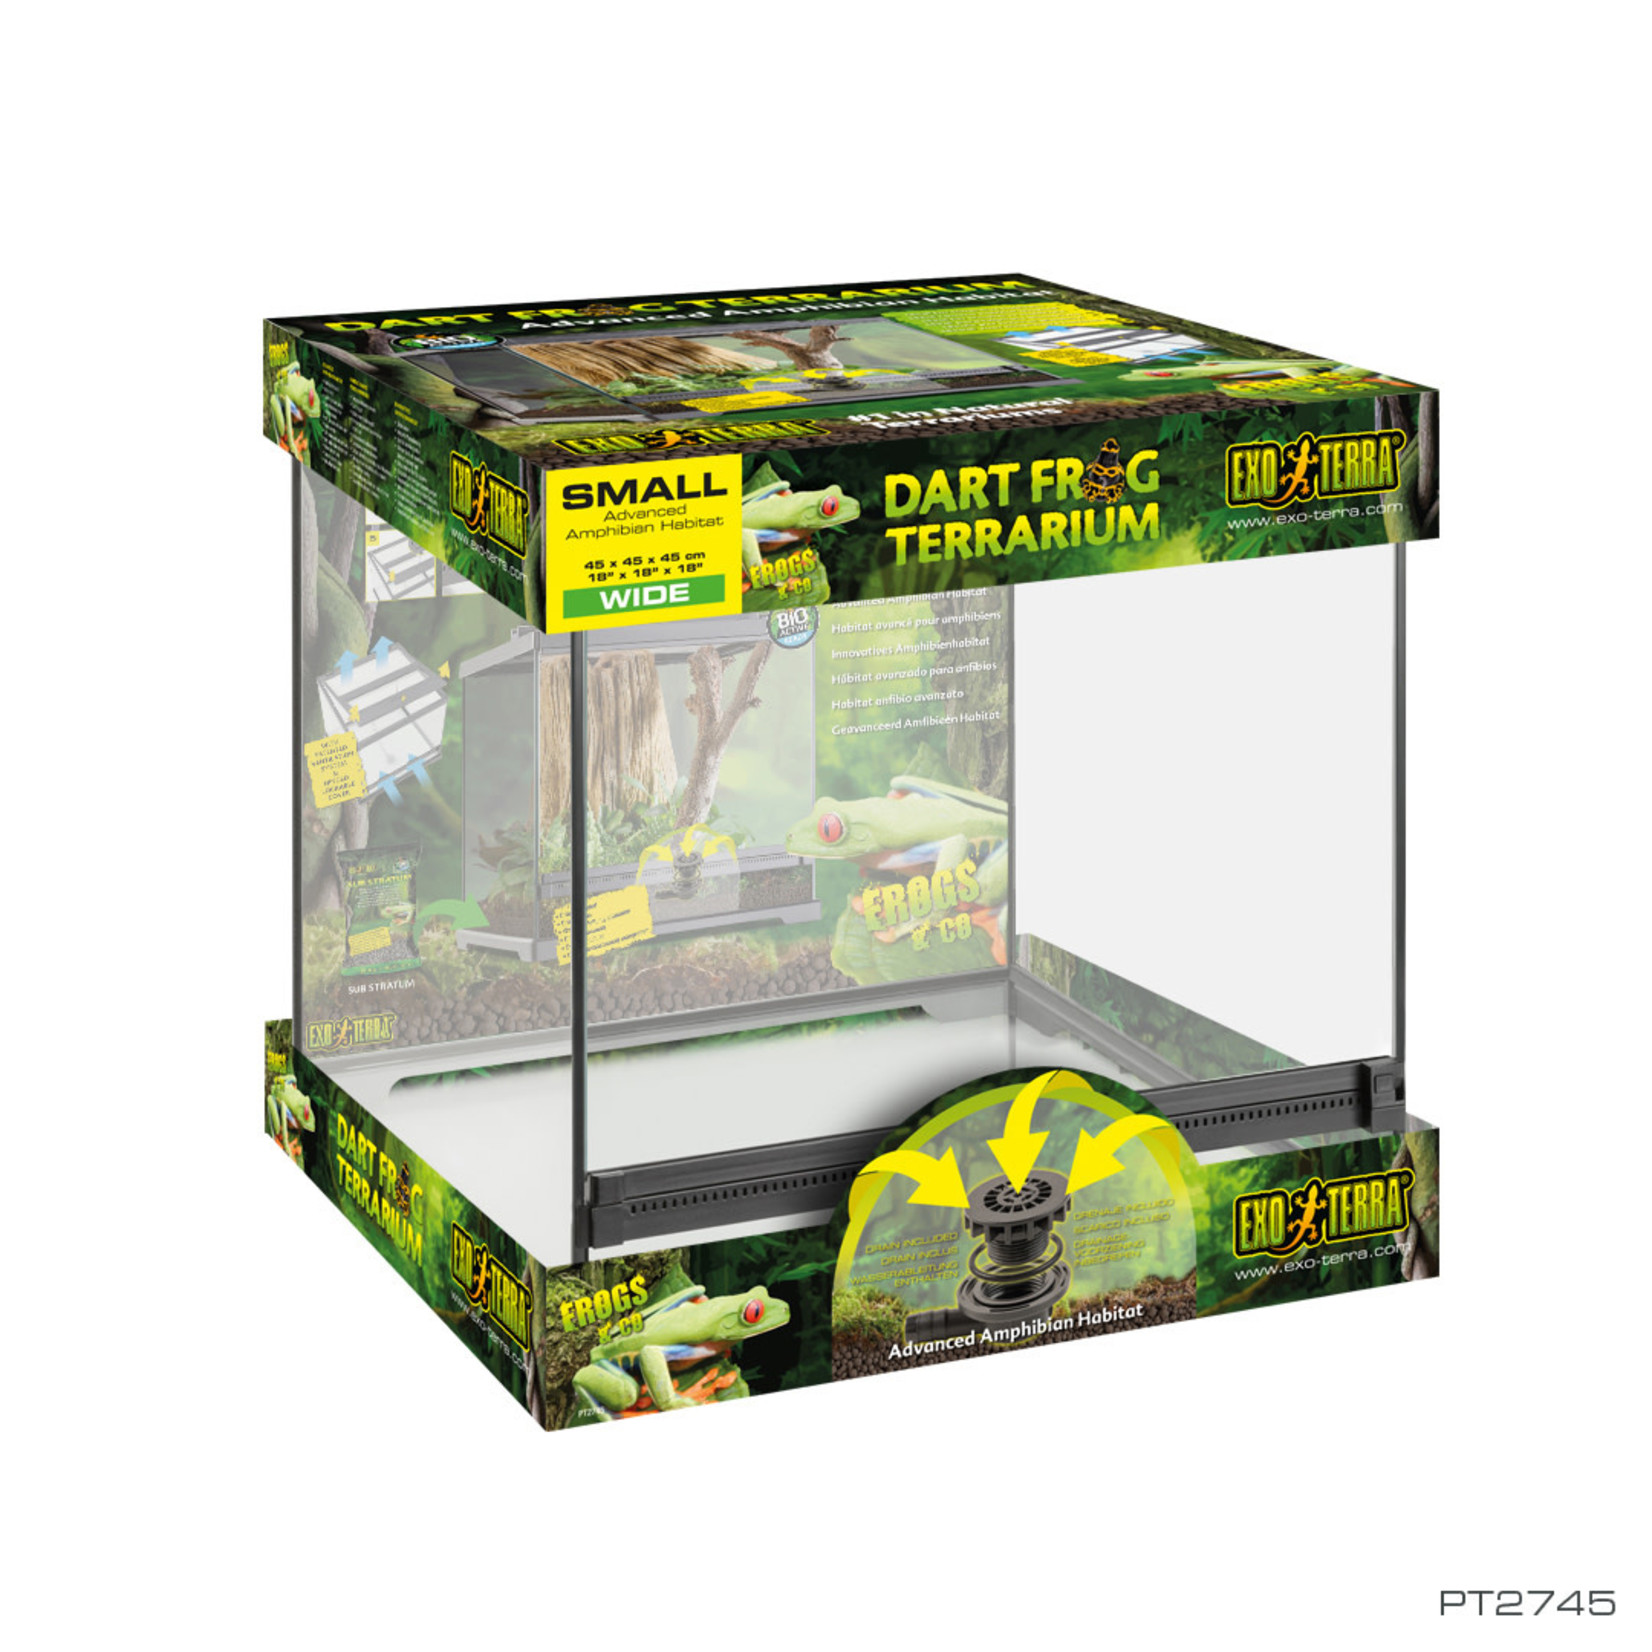 EXO TERRA Exo Terra Dart Frog Terrarium - Advanced Amphibian Habitat - Small/Wide - 18 x 18 x 18 in